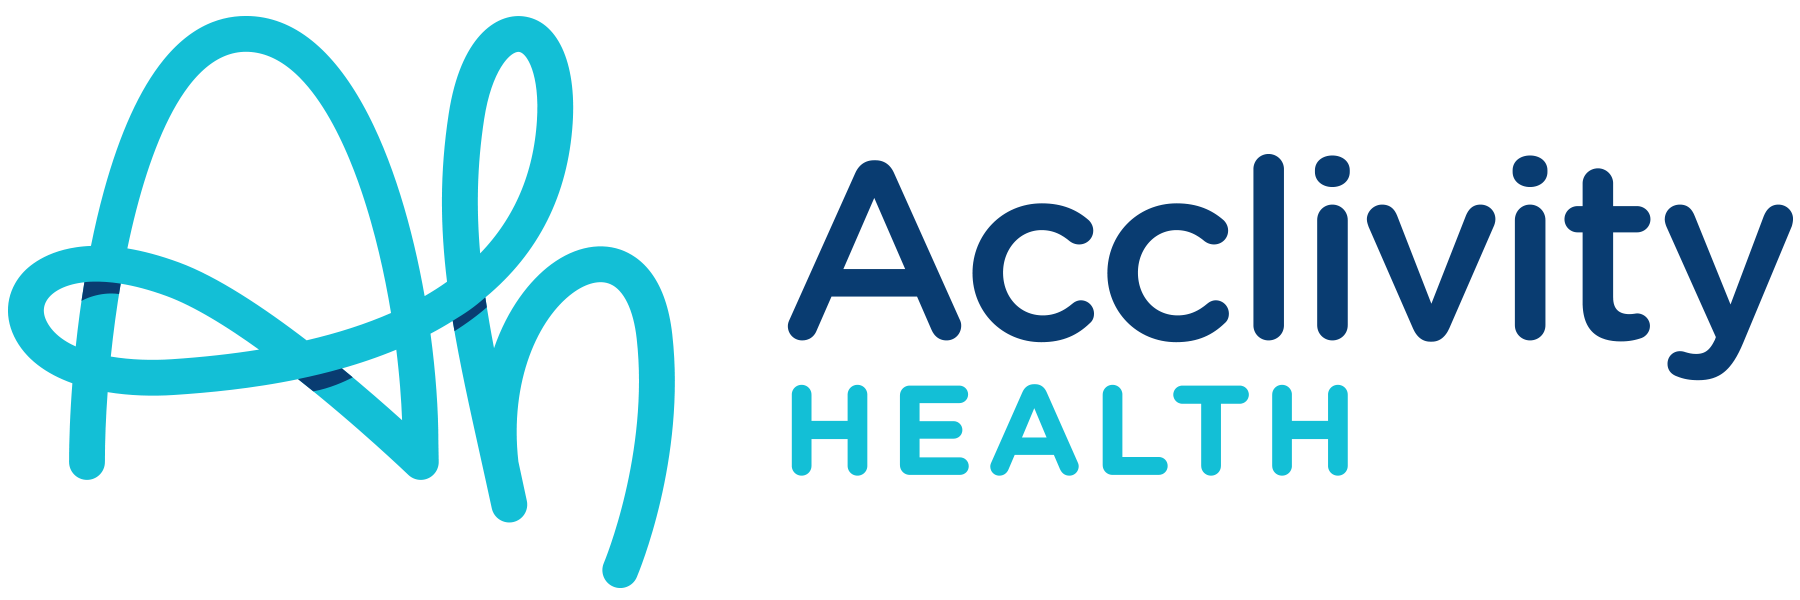 Acclivity Health Logo